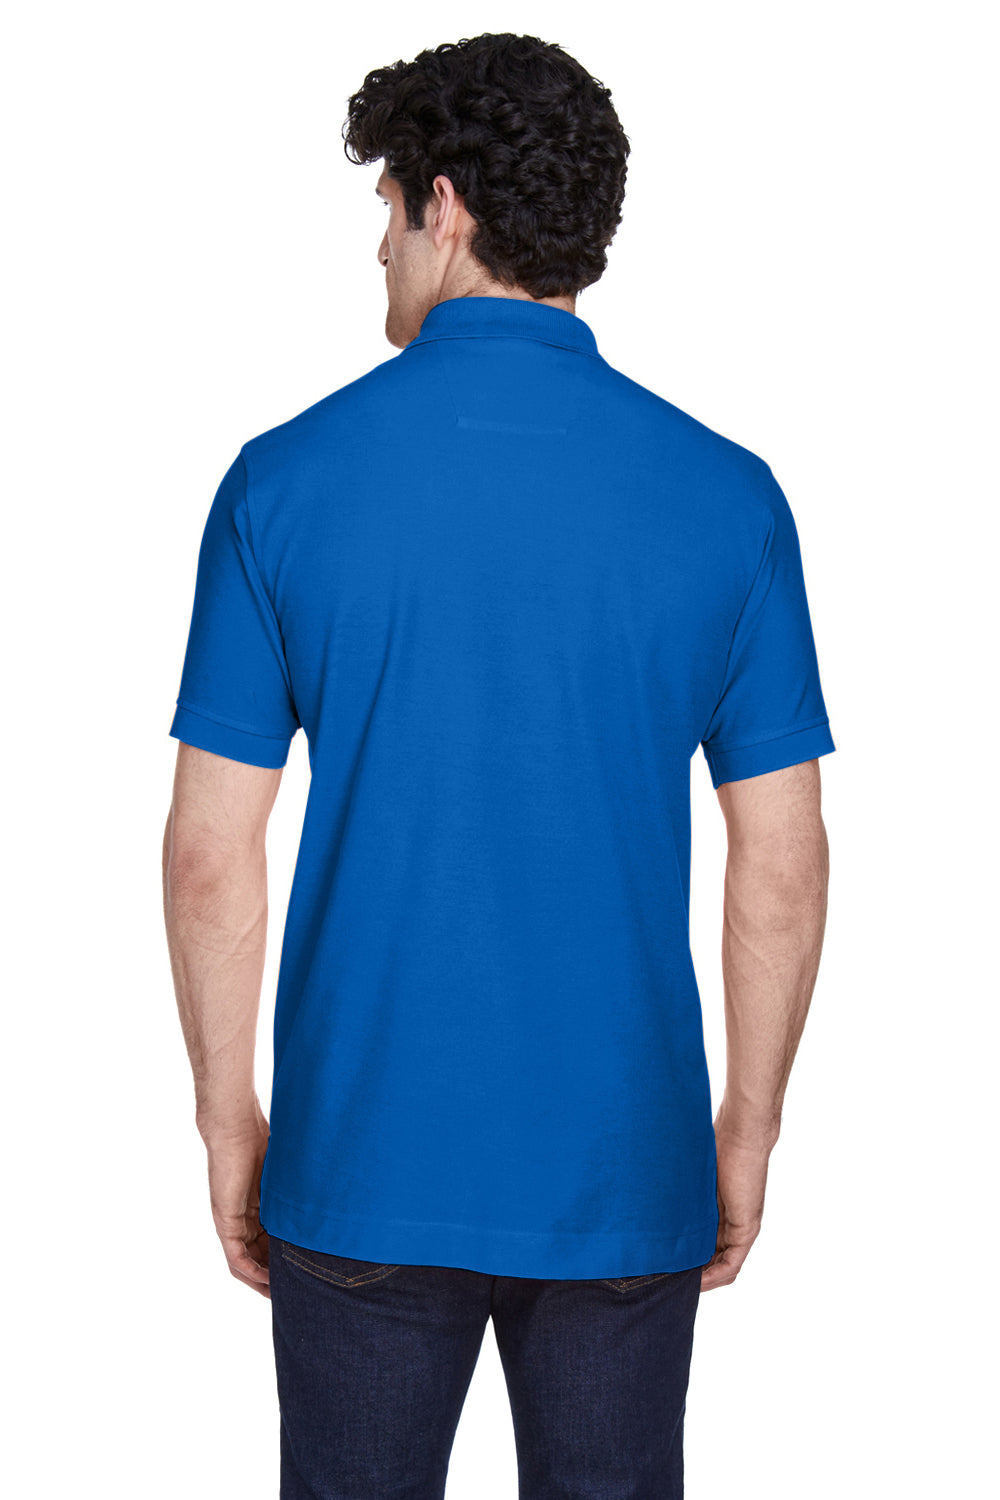 Devon & Jones D100 Mens Short Sleeve Polo Shirt French Blue Back